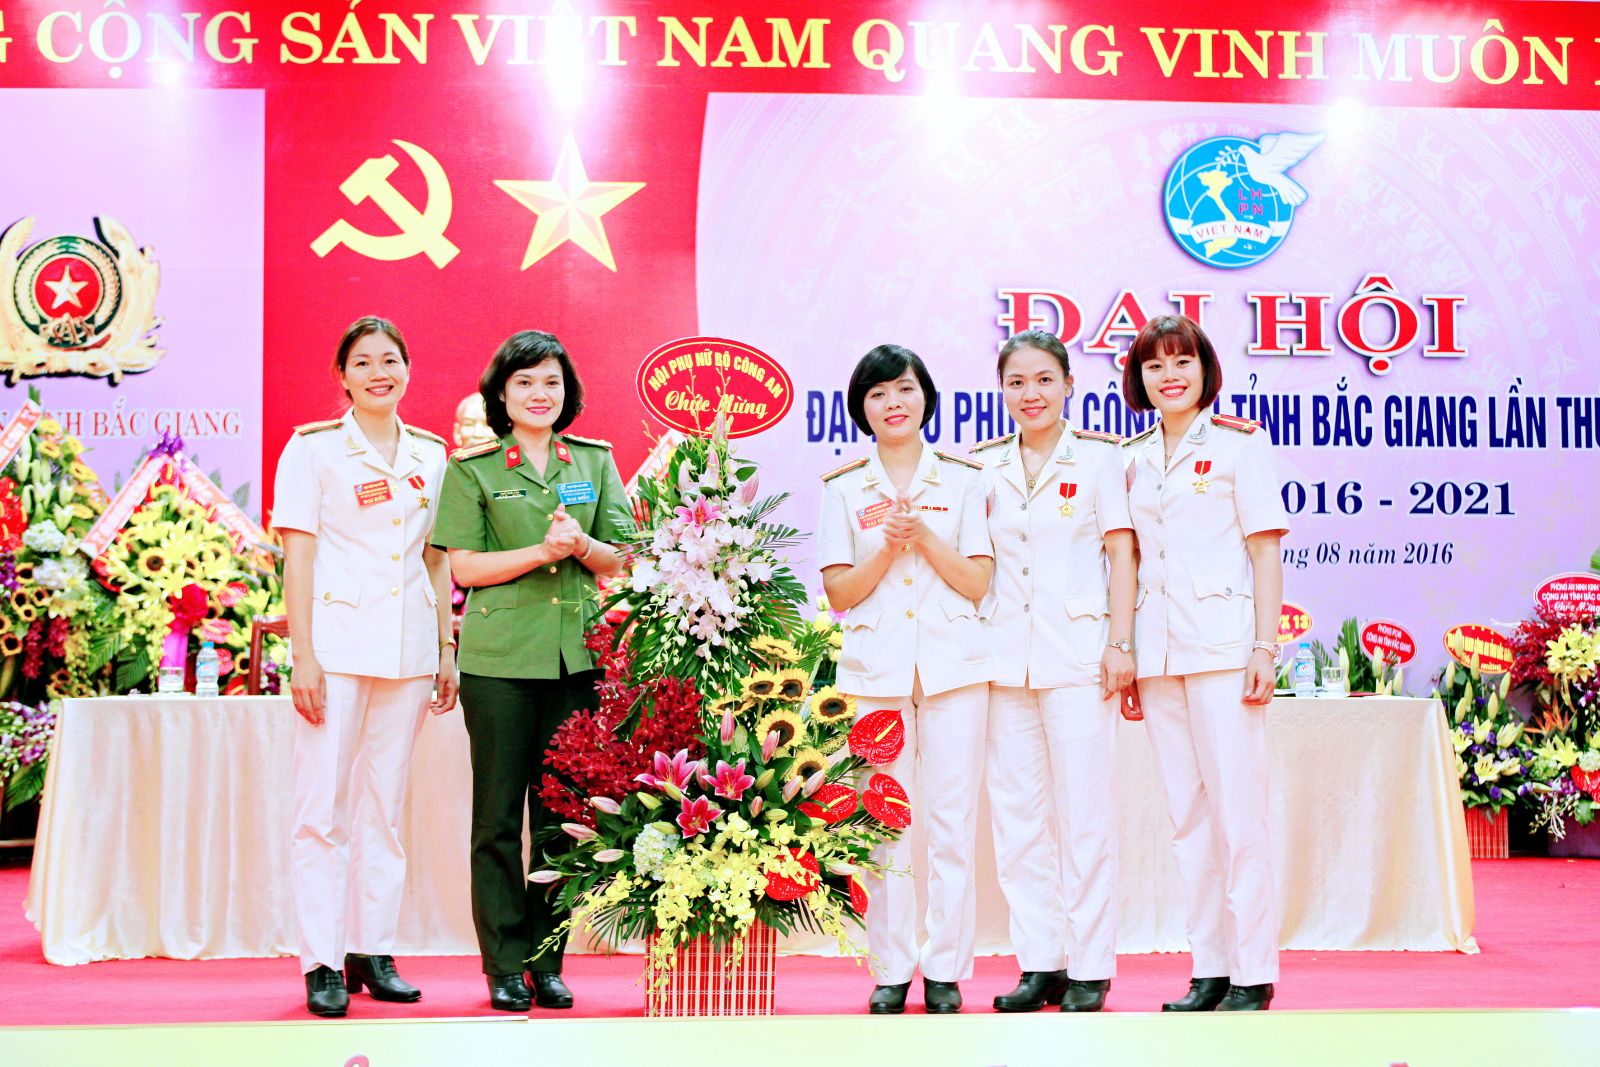 8- Đc Đại tá Ngô Hoài Thu, Chủ tịch Hội phụ nữ BCA tăng hoa chúc mừng Đại hội Đại biểu phụ nữ CAT Bắc Giang lần thứ IV nhiệm kỳ 2016-2021 (ngày 11-8-2016)